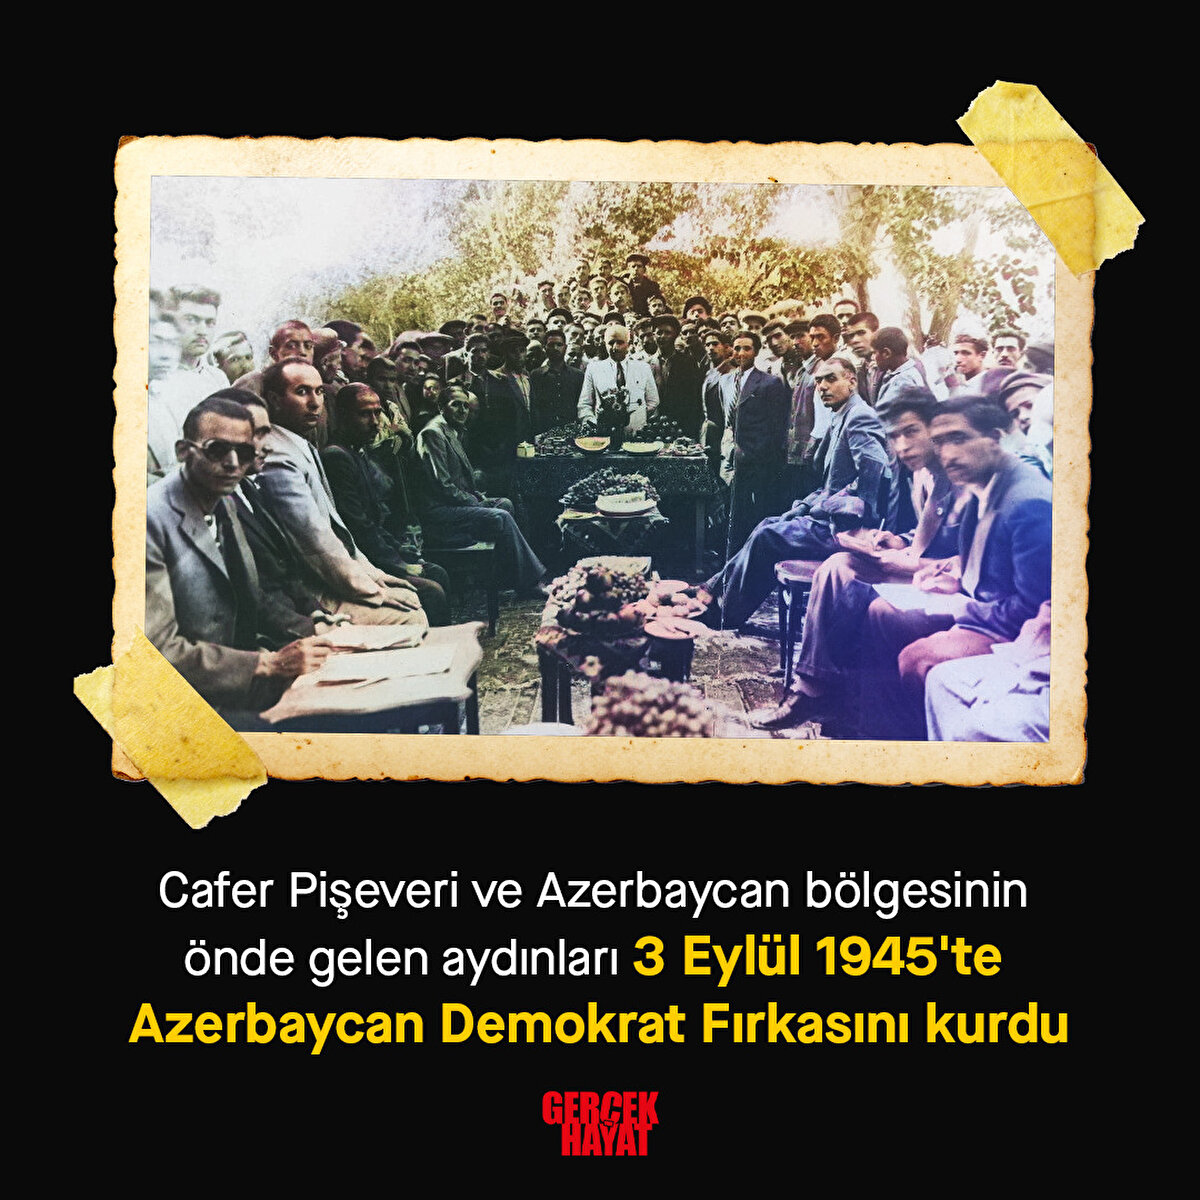 1945'te Azerbaycan Demokrat Fırkasını kurdu